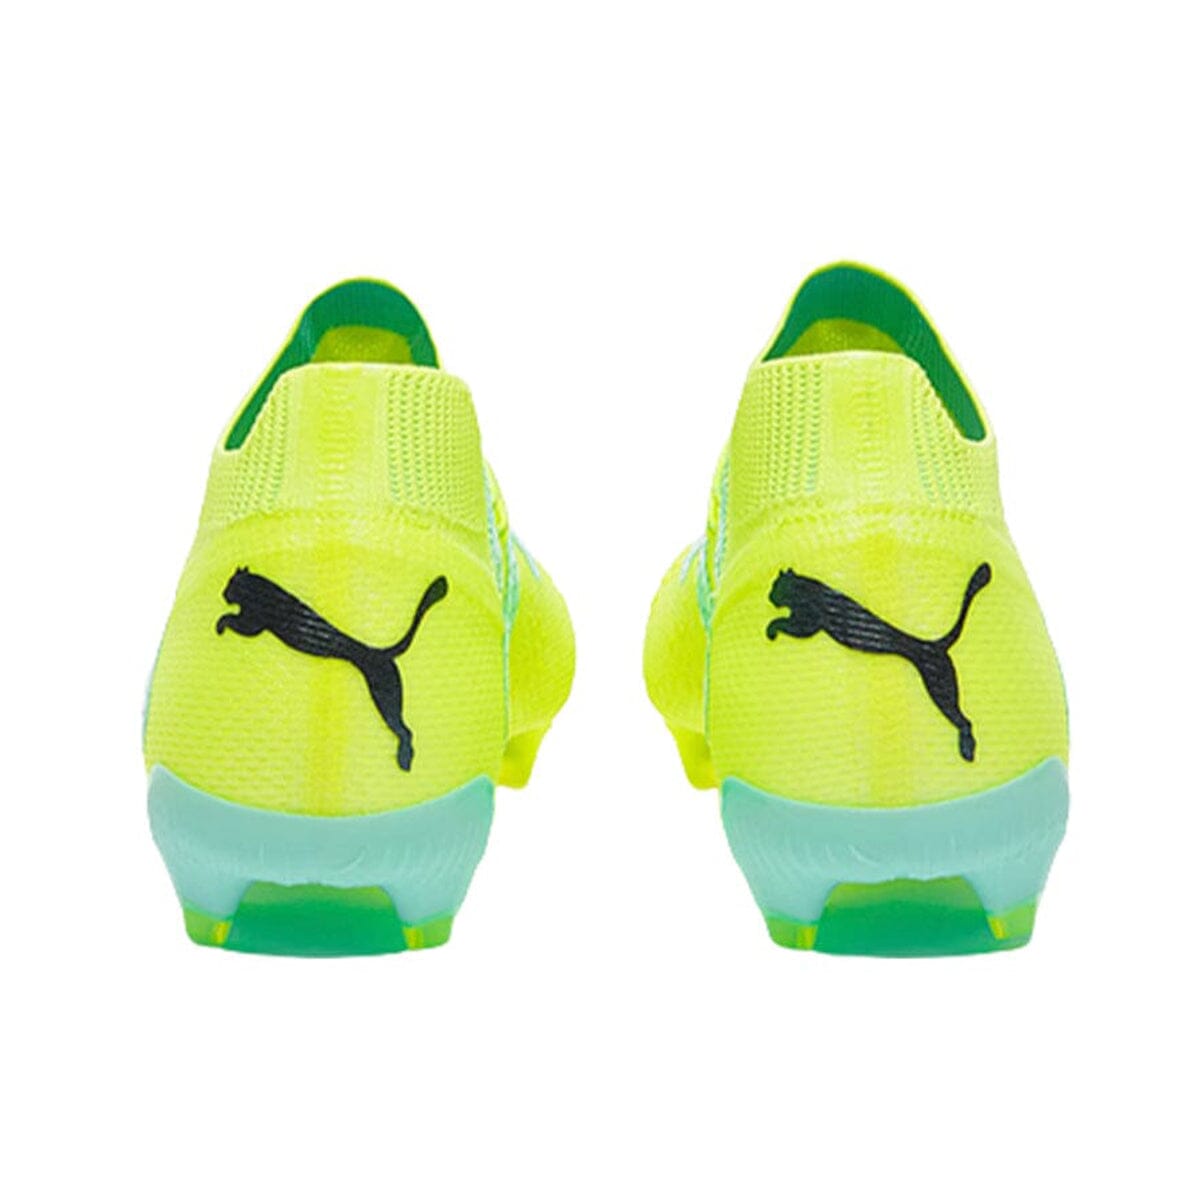 Puma Men's Future Ultimate FG/AG Football Boots | 10716503 Cleats Puma 